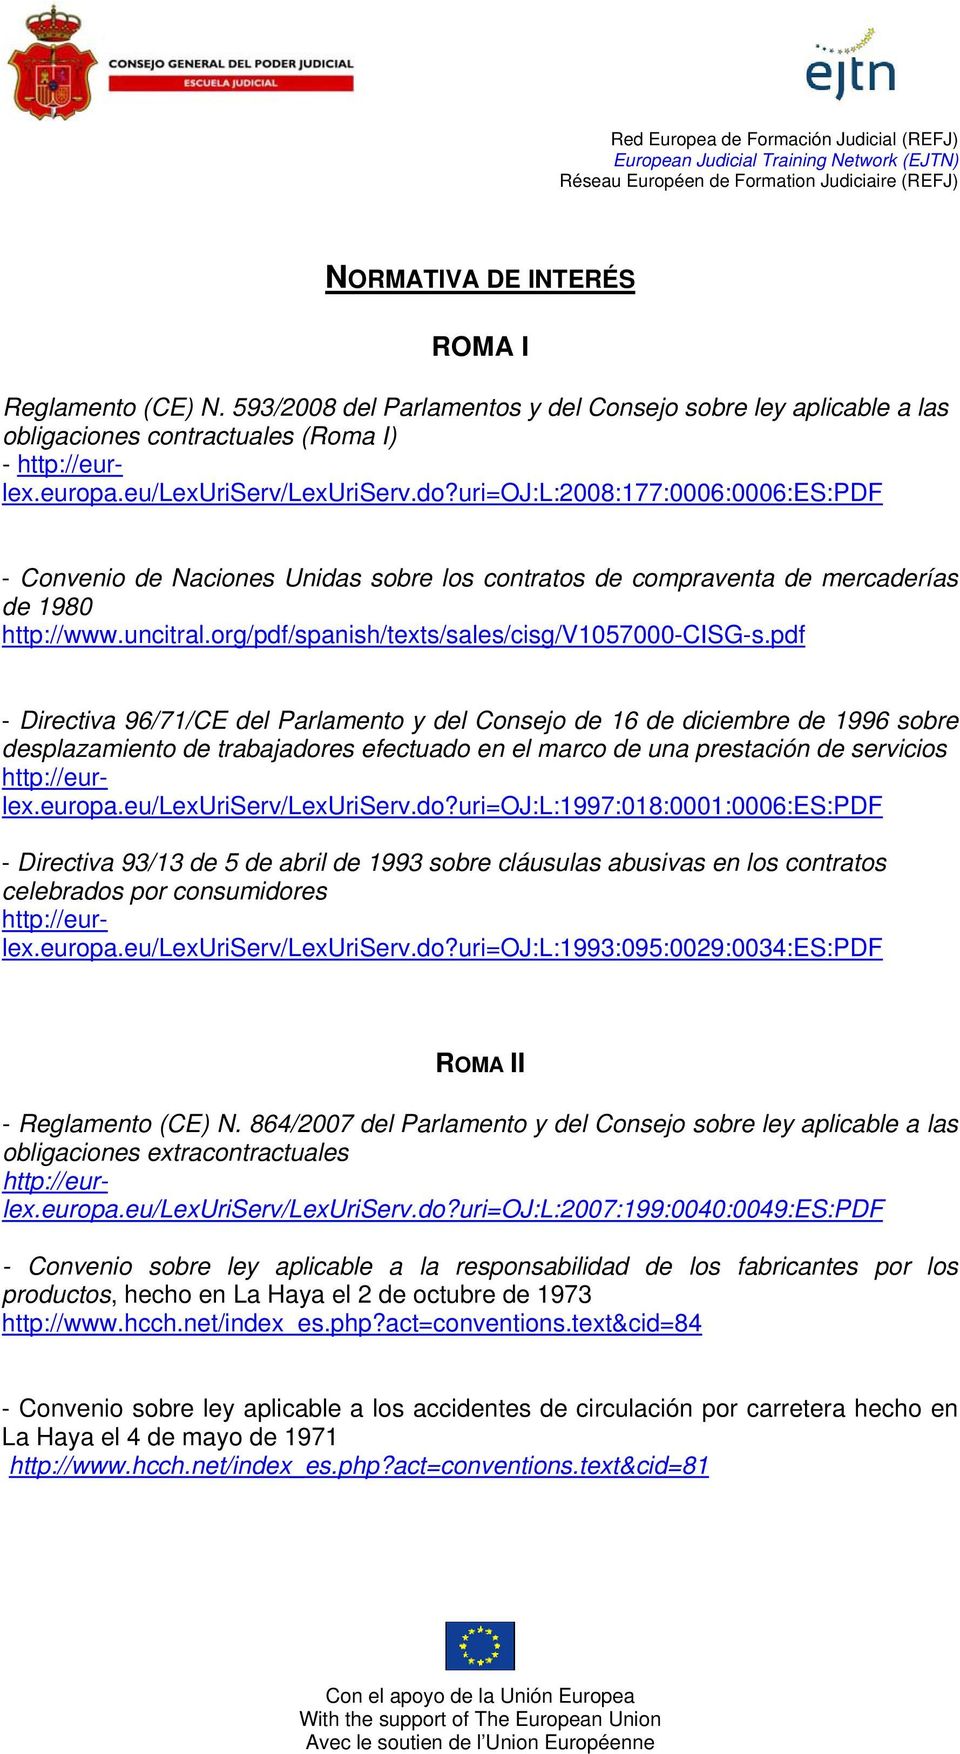 pdf - Directiva 96/71/CE del Parlamento y del Consejo de 16 de diciembre de 1996 sobre desplazamiento de trabajadores efectuado en el marco de una prestación de servicios http://eurlex.europa.